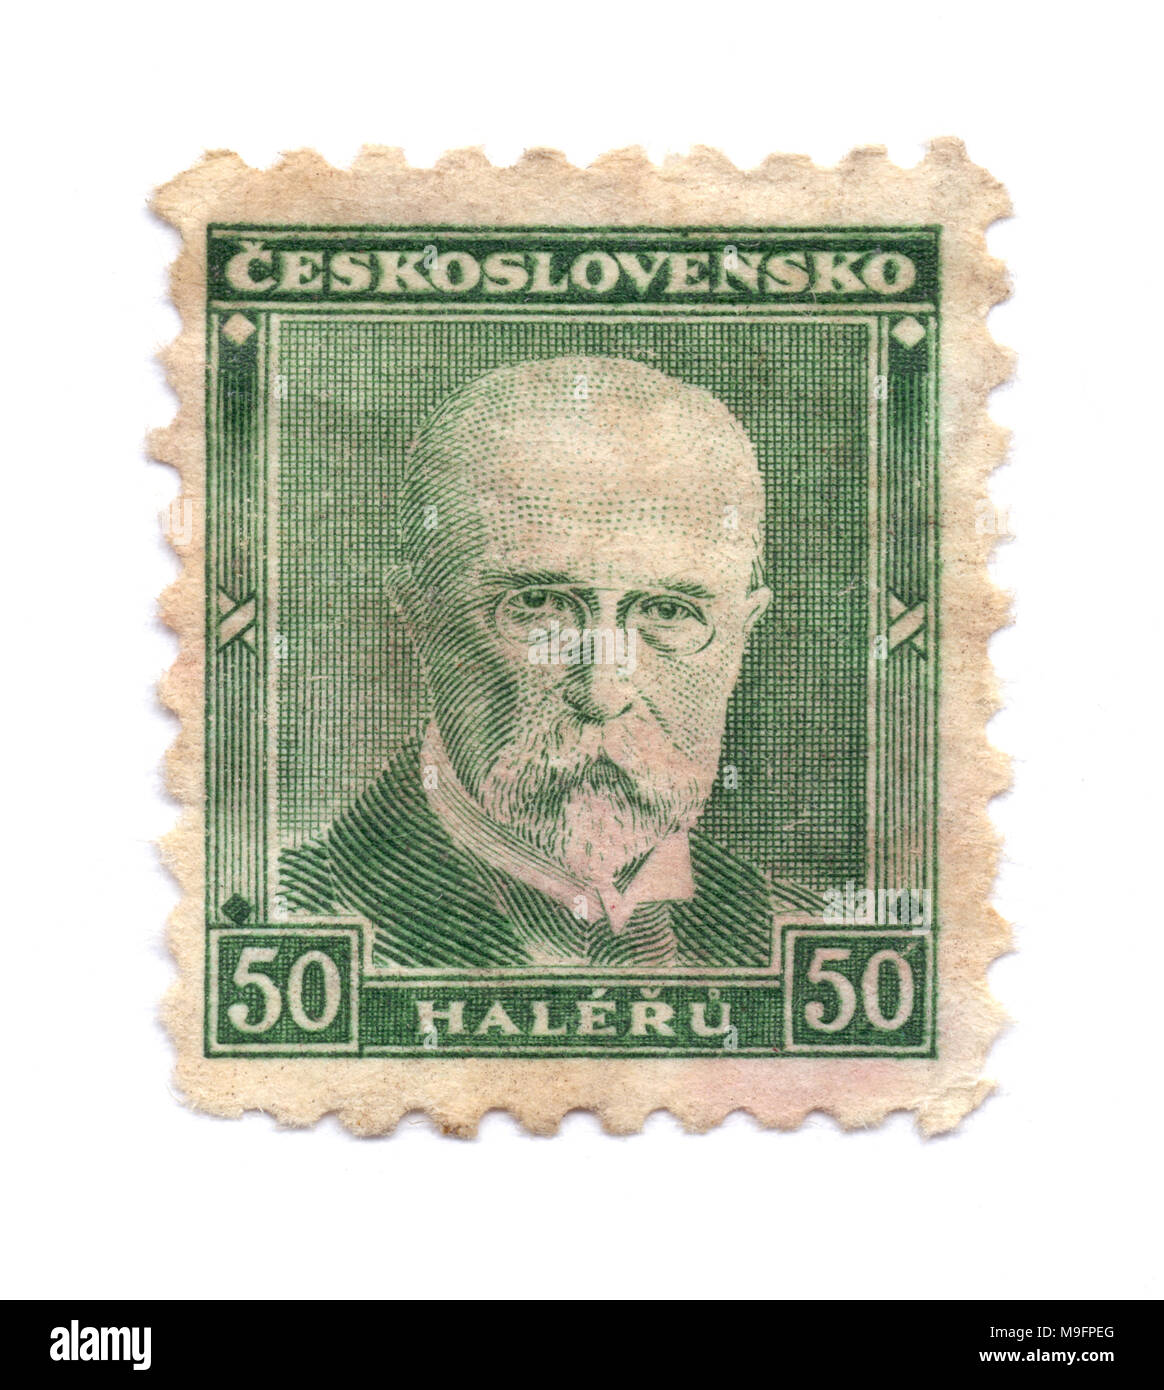 Tomas Garrigue Masaryk, premier président tchécoslovaque (1918-1935) sur le timbre-poste, imprimé à Prague, en Tchécoslovaquie (aujourd'hui République tchèque) en vers1930 Banque D'Images